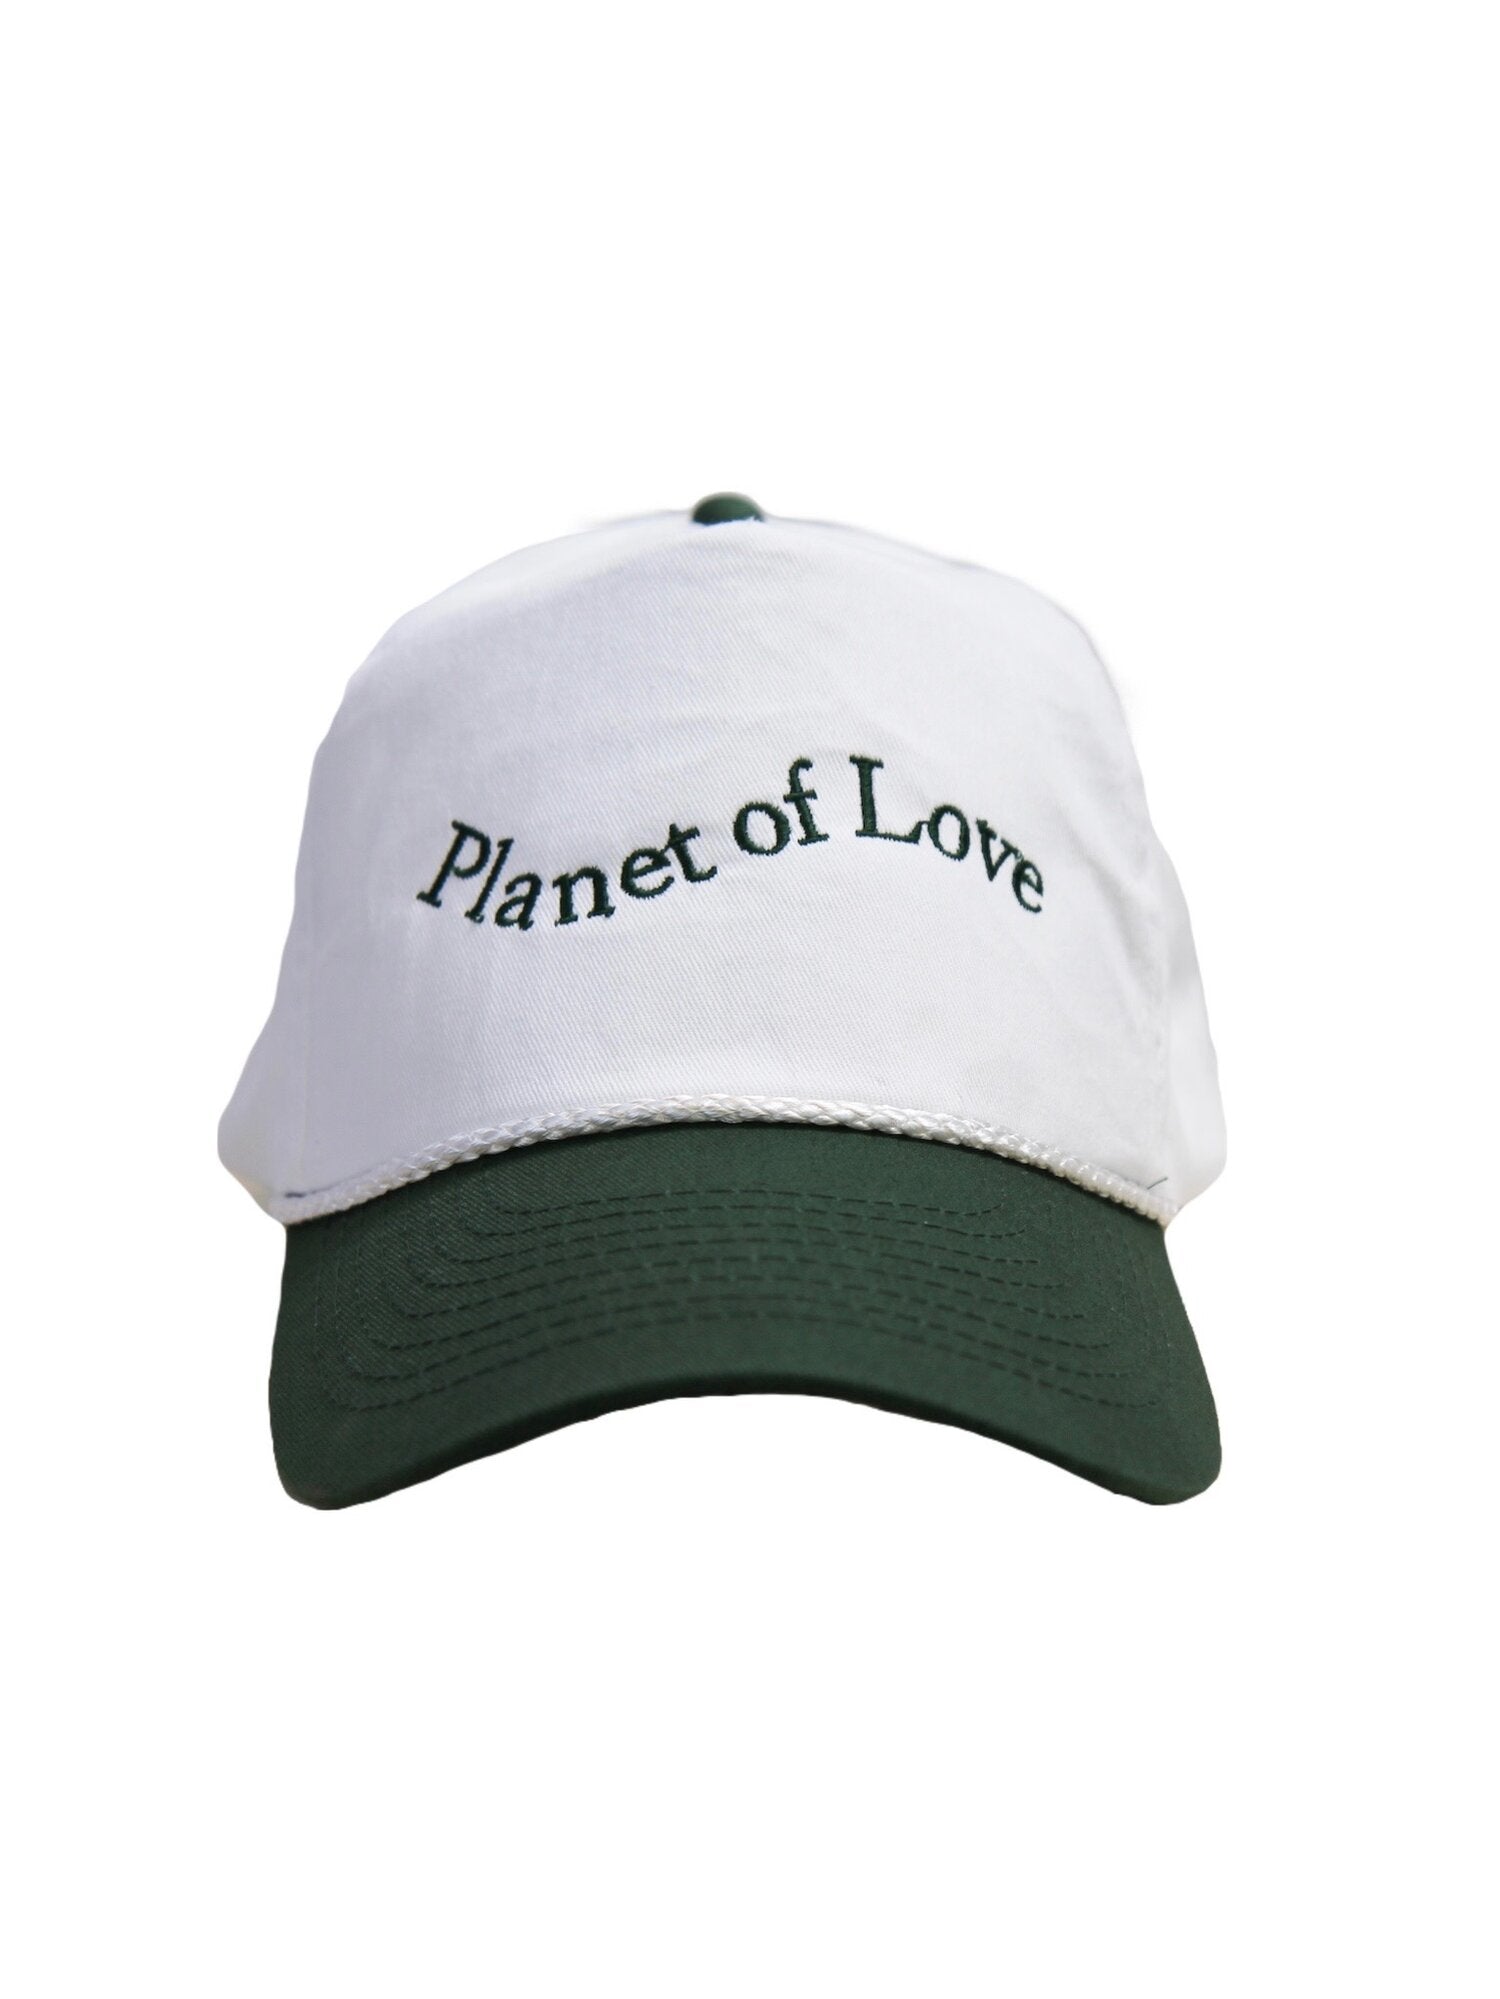 Planet of Love Trucker Hat